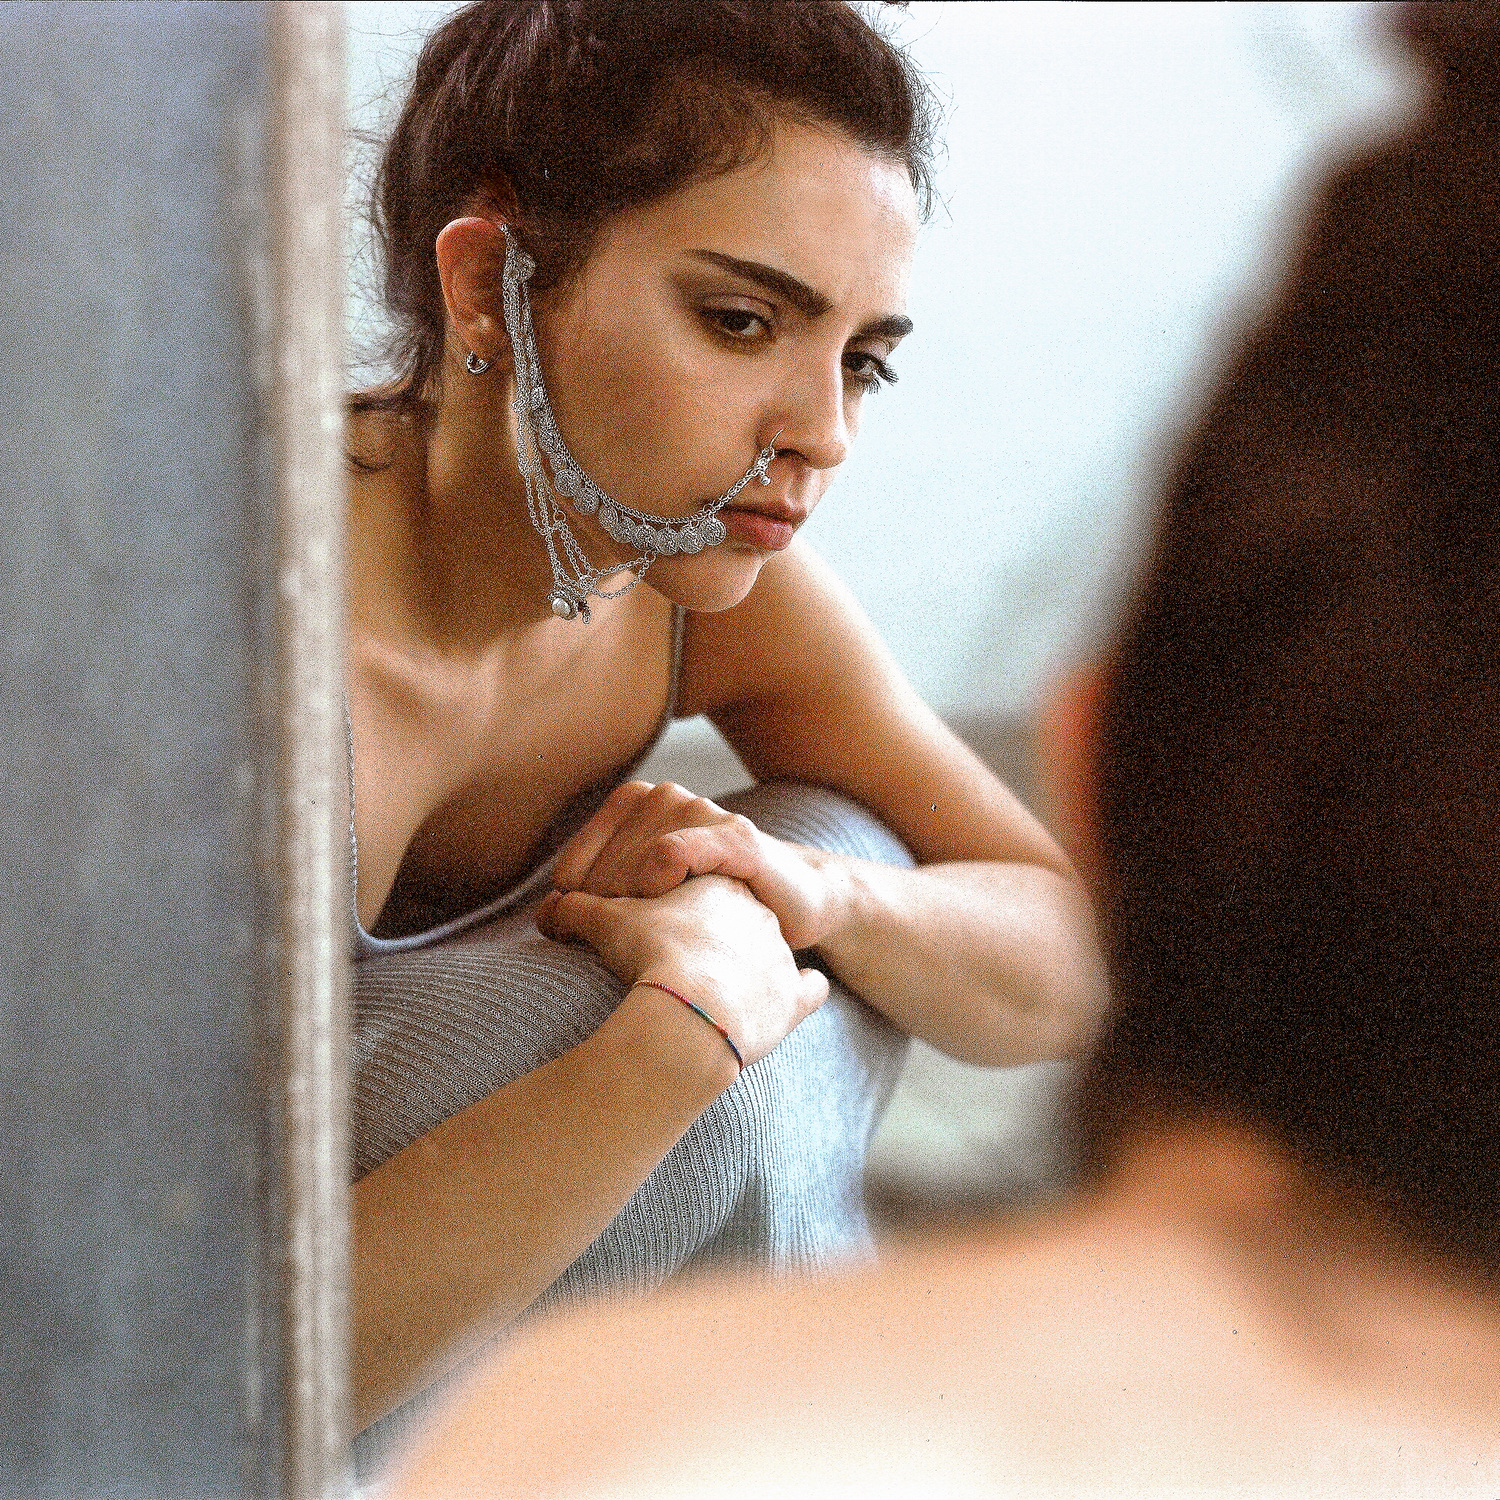 Ritratto di ragazza con piercing etnico davanti allo specchio, fotografia analogica medio formato